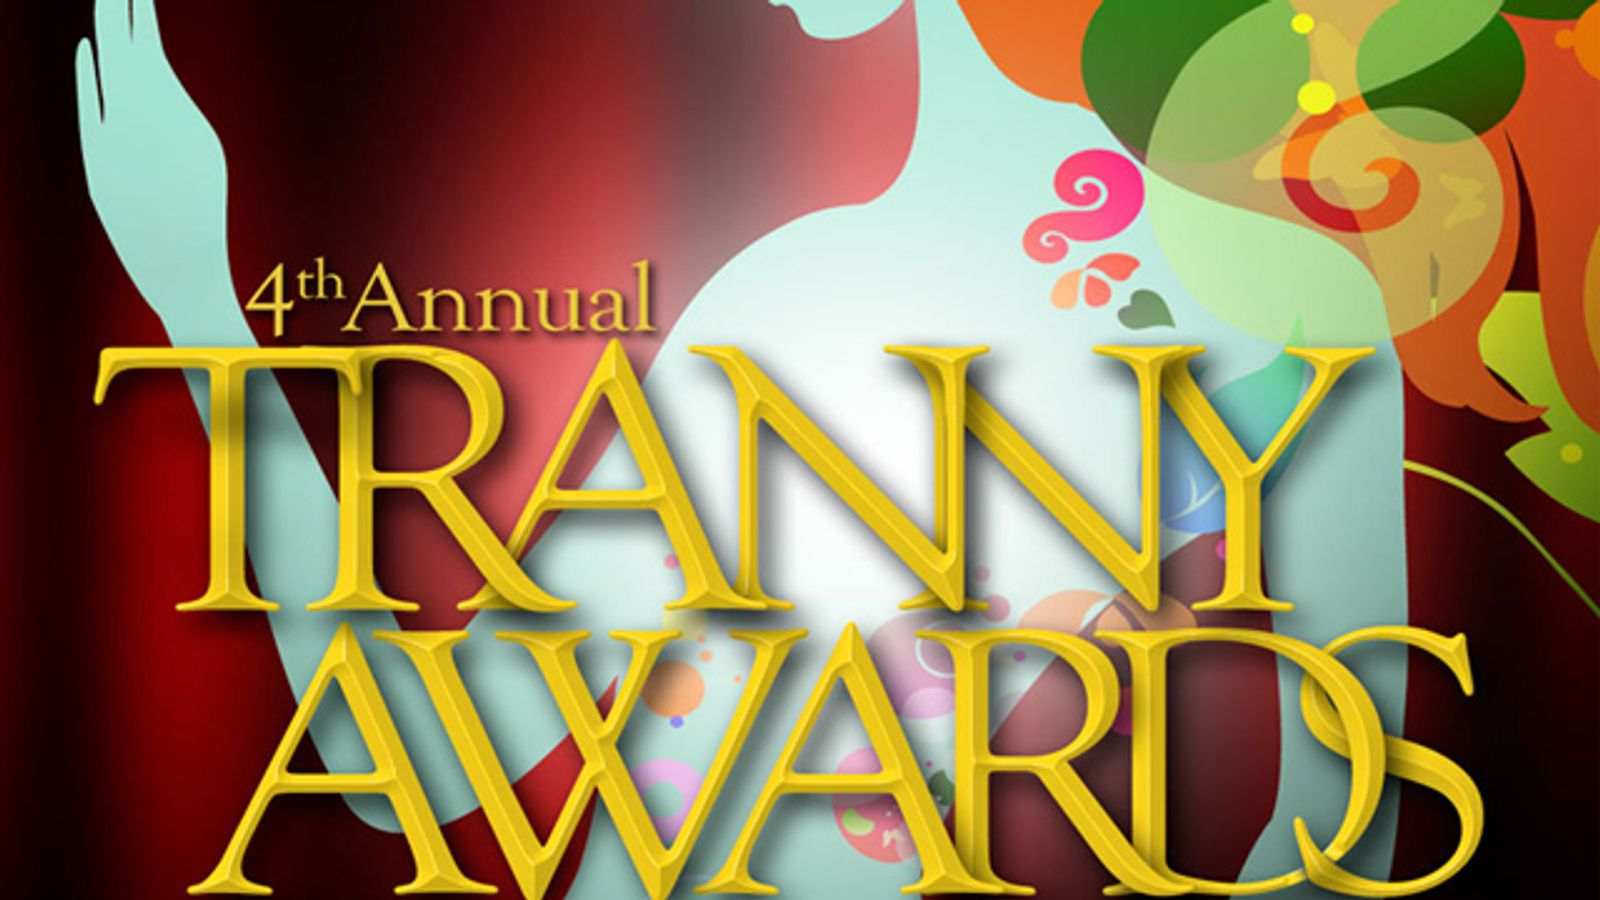 4th Annual Tranny Awards Moves to Bigger Venue